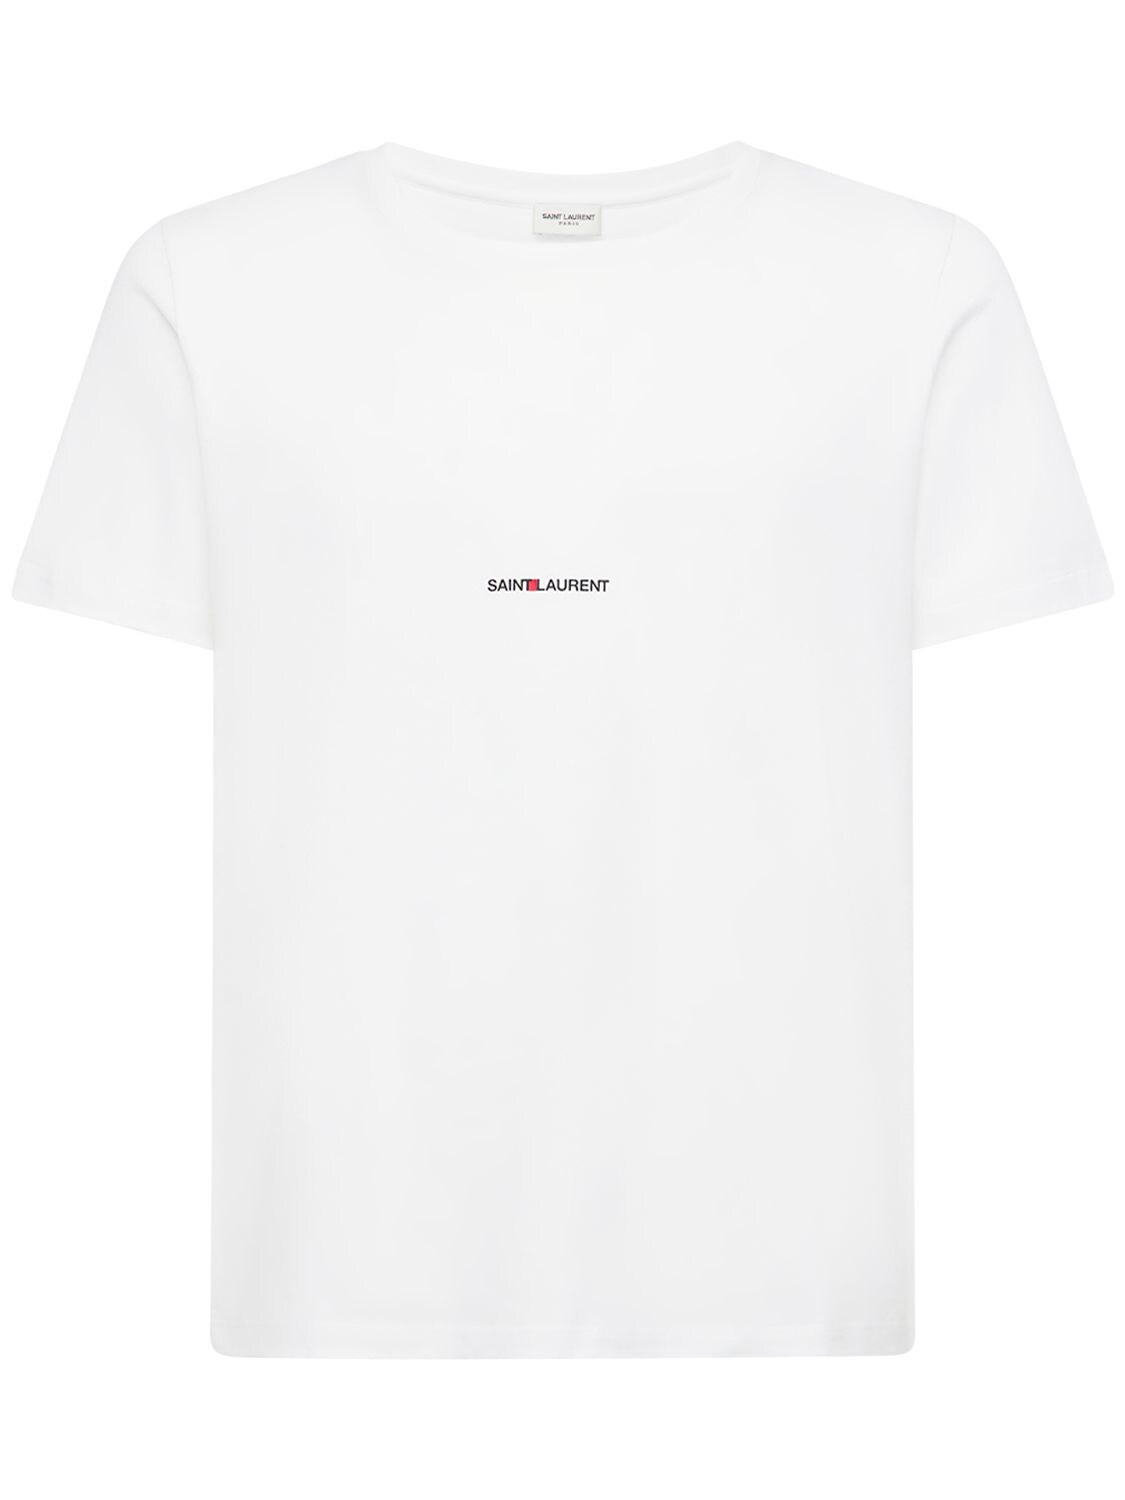 SAINT LAURENT Logo Detail Cotton Jersey T-shirt